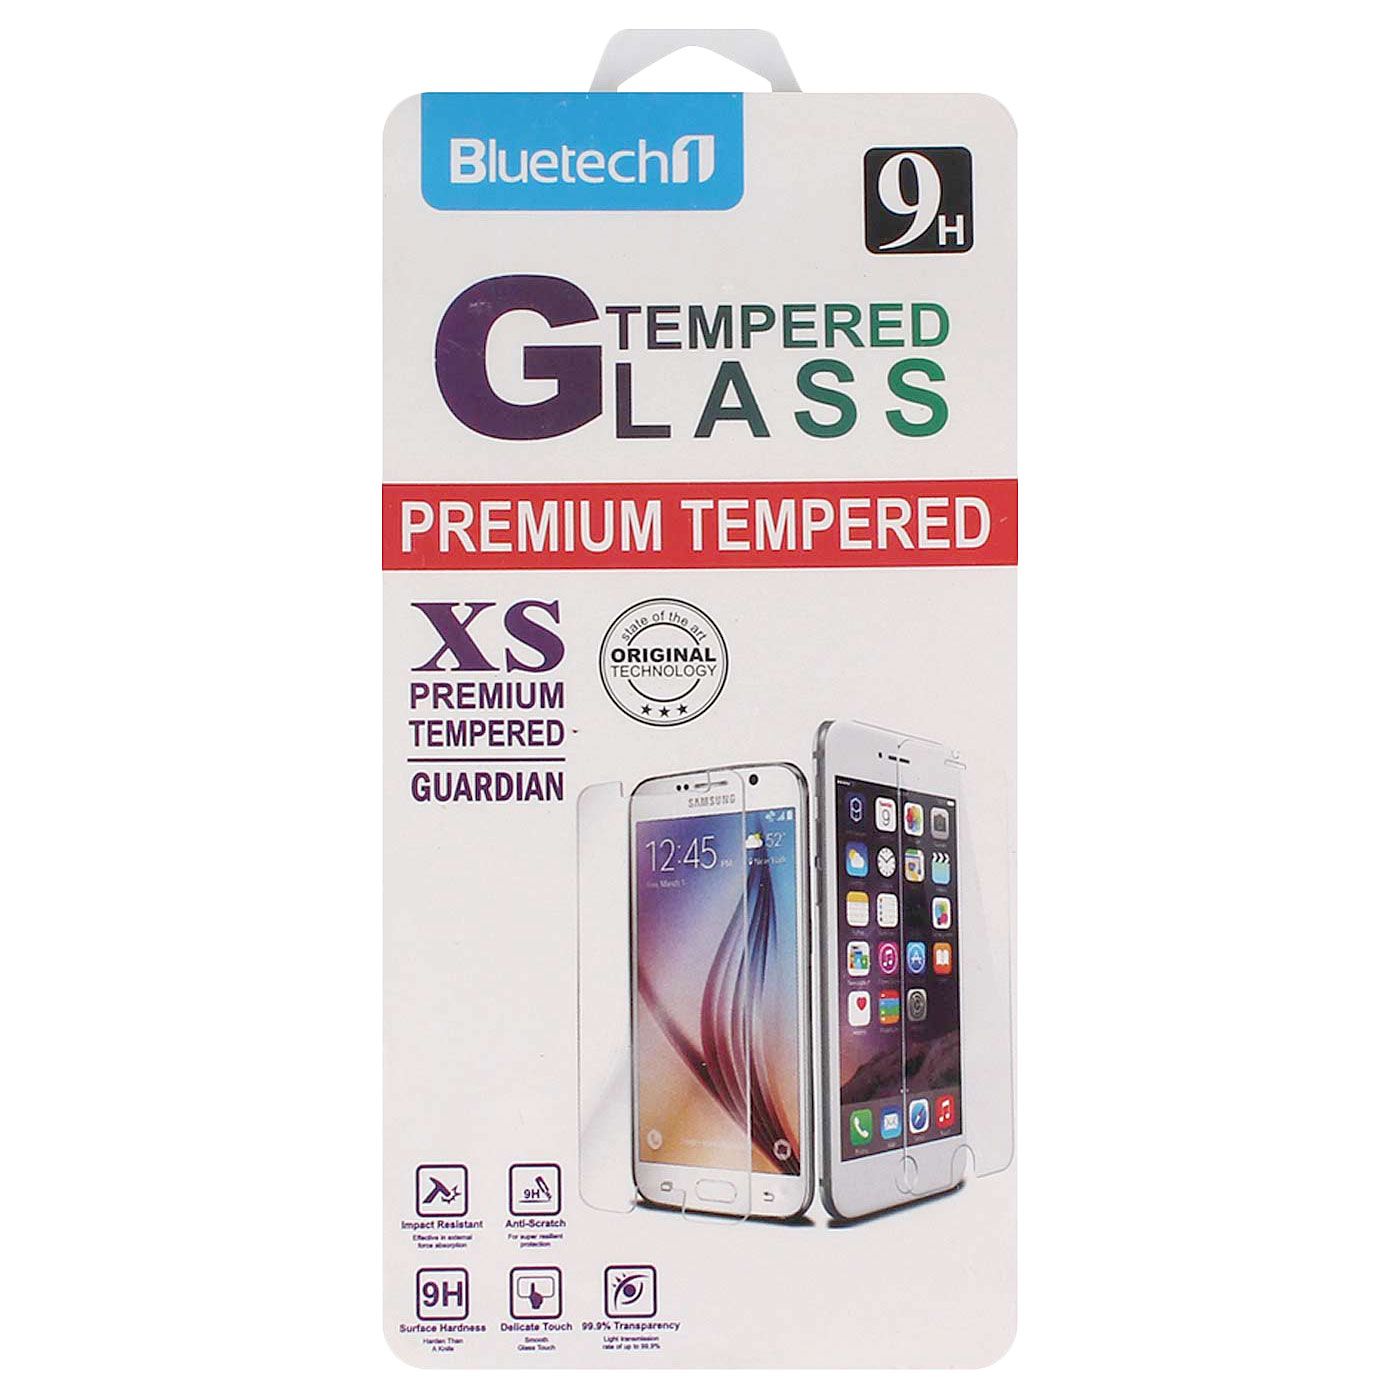 Bluetech Tempered Glass Samsung Galaxy A8 - 2